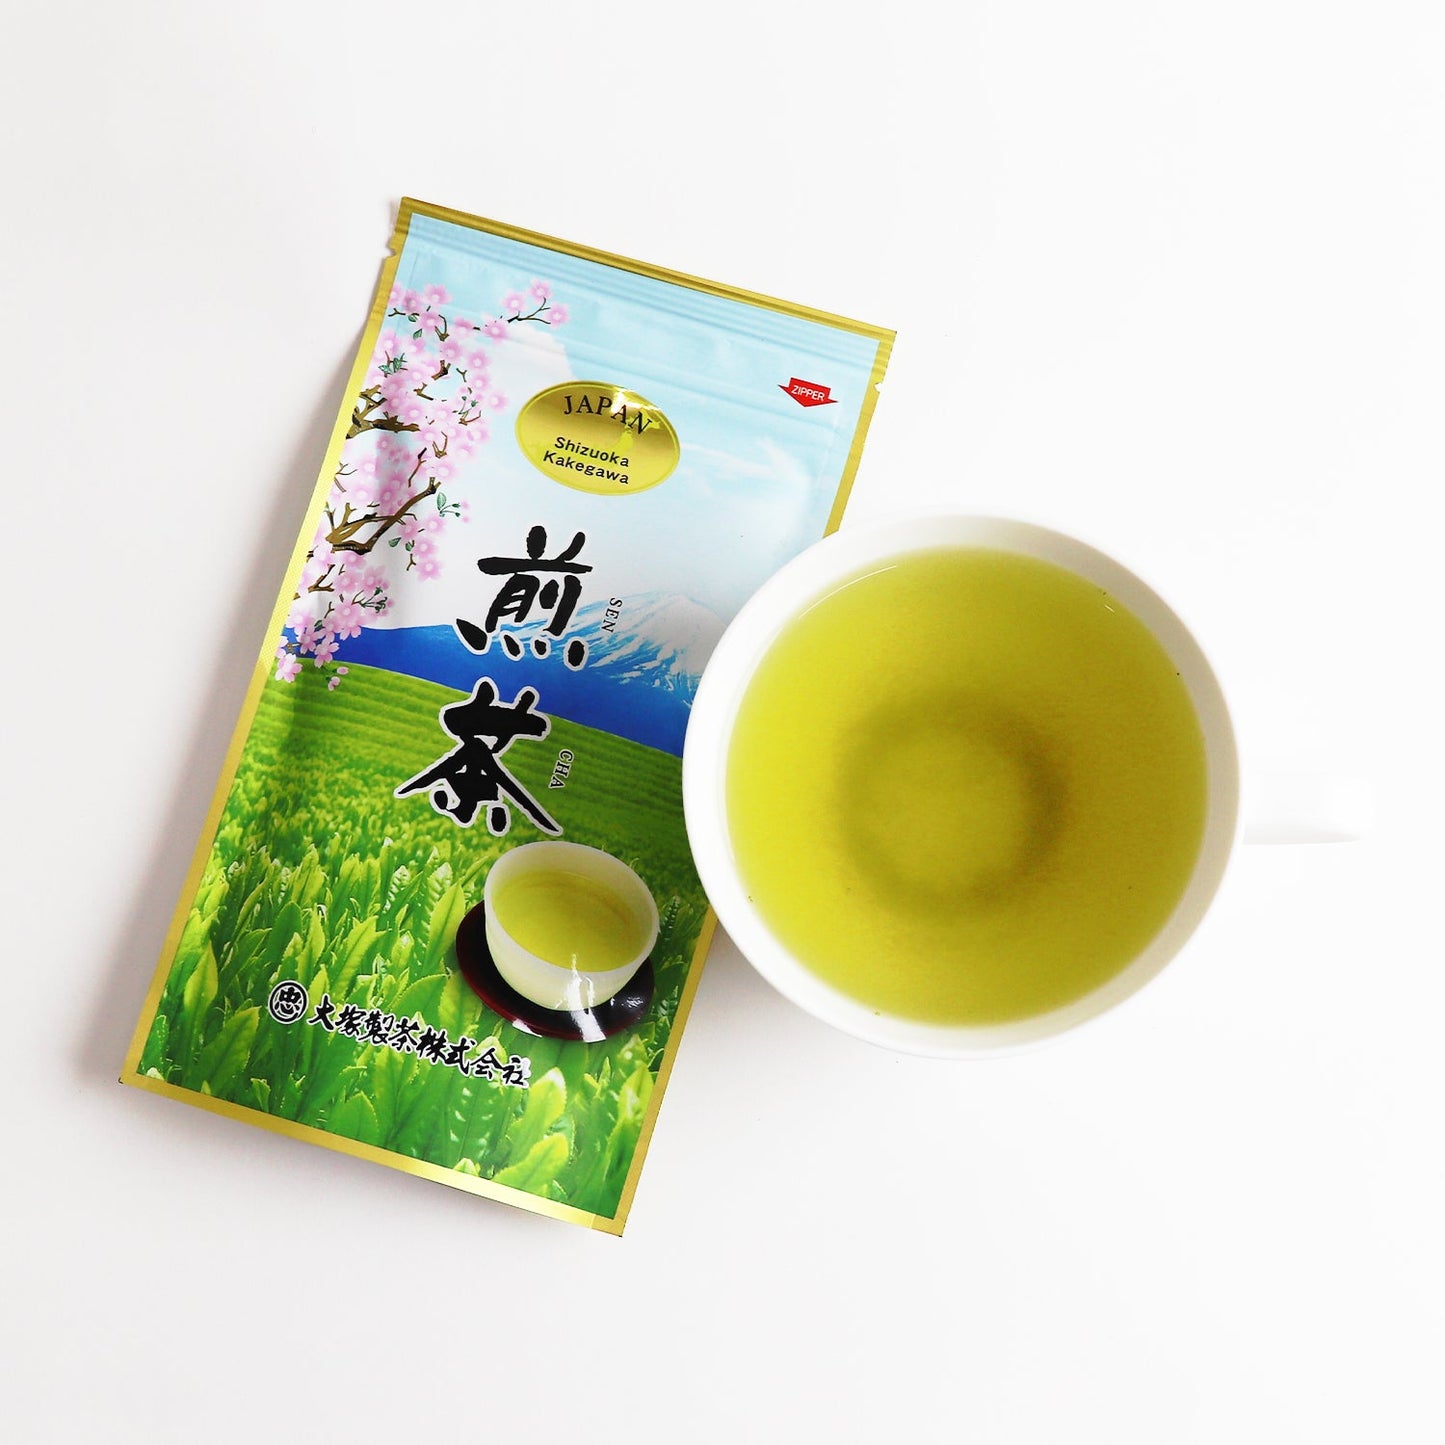 日本茶 大塚煎茶 超煎茶 100G TRÀ NHẬT OTSUKA SENCHA SUPER SENCHA 100G JAPANESE TEA OTSUKA SENCHA SUPER SENCHA 100G 